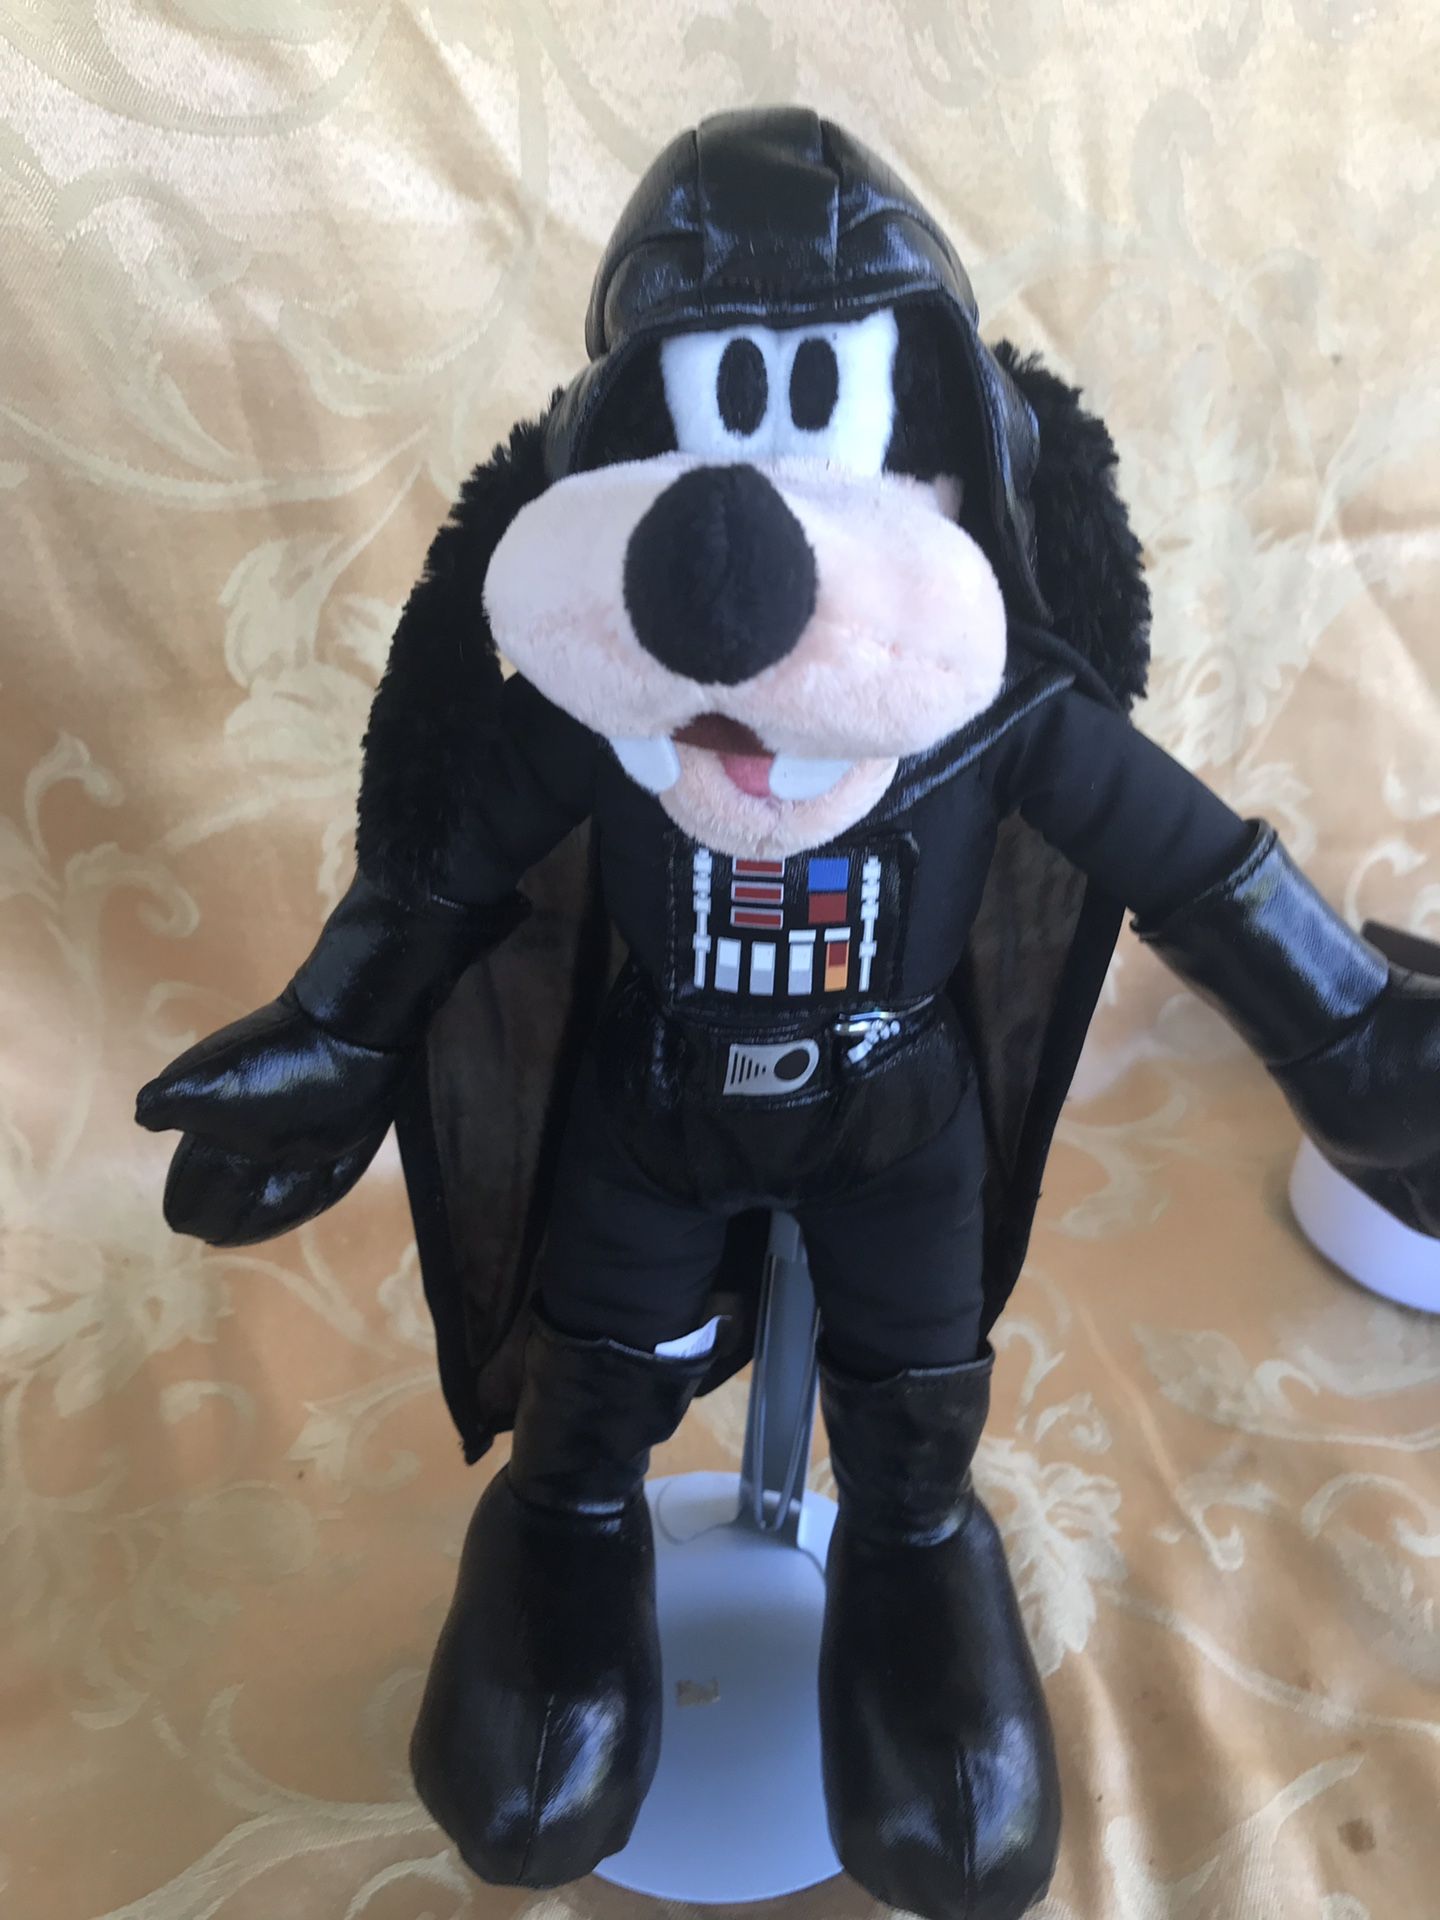 Goofy dark Vader